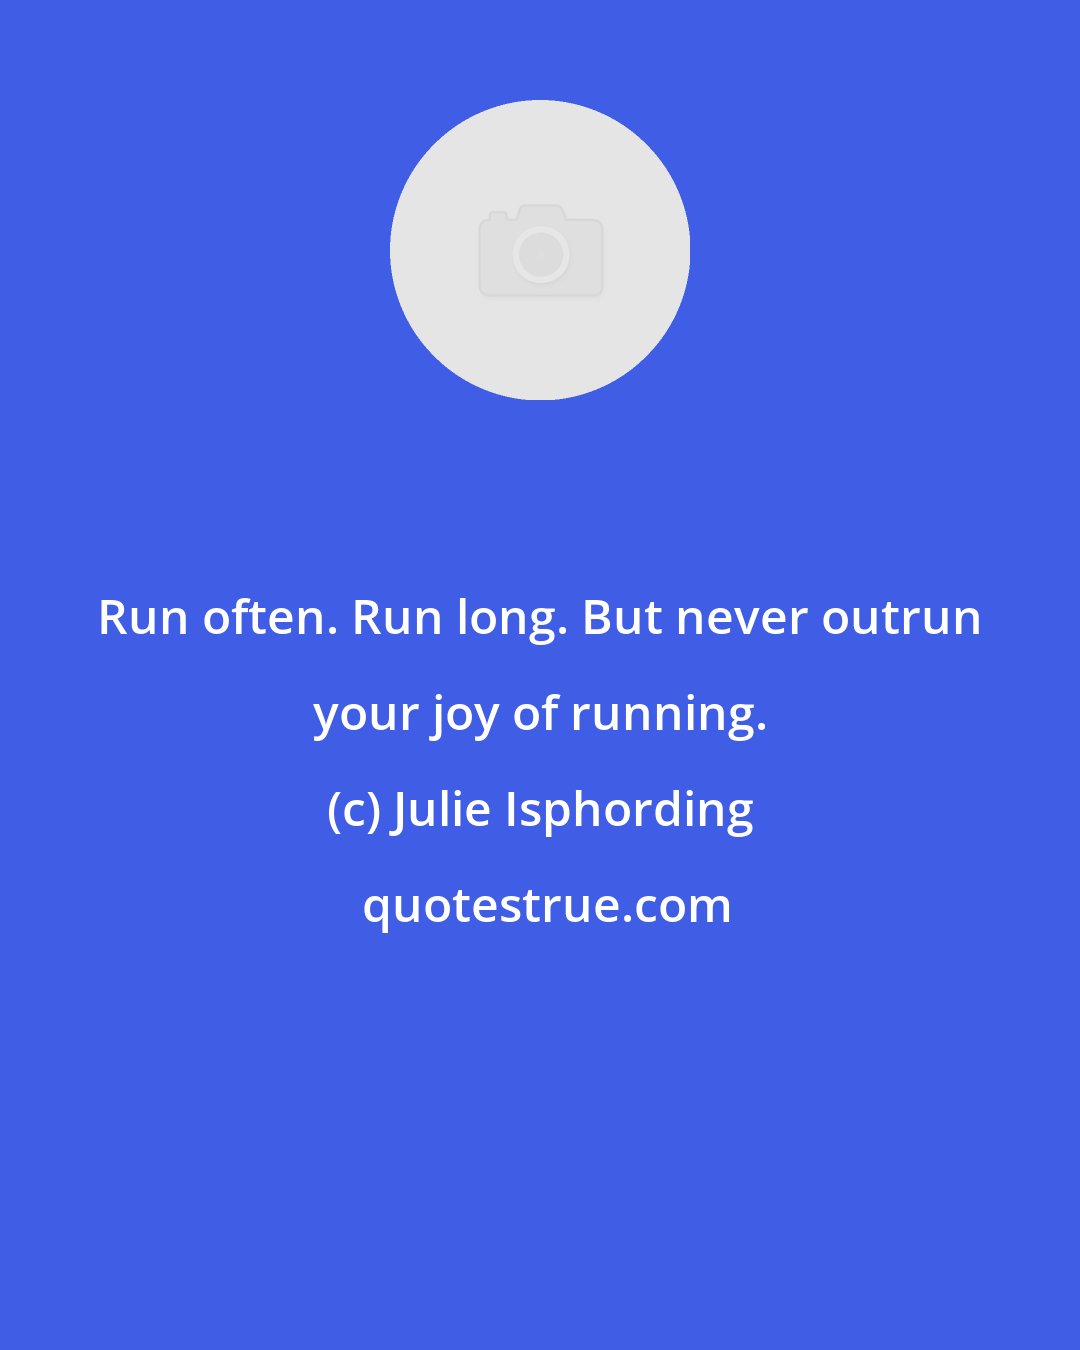 Julie Isphording: Run often. Run long. But never outrun your joy of running.